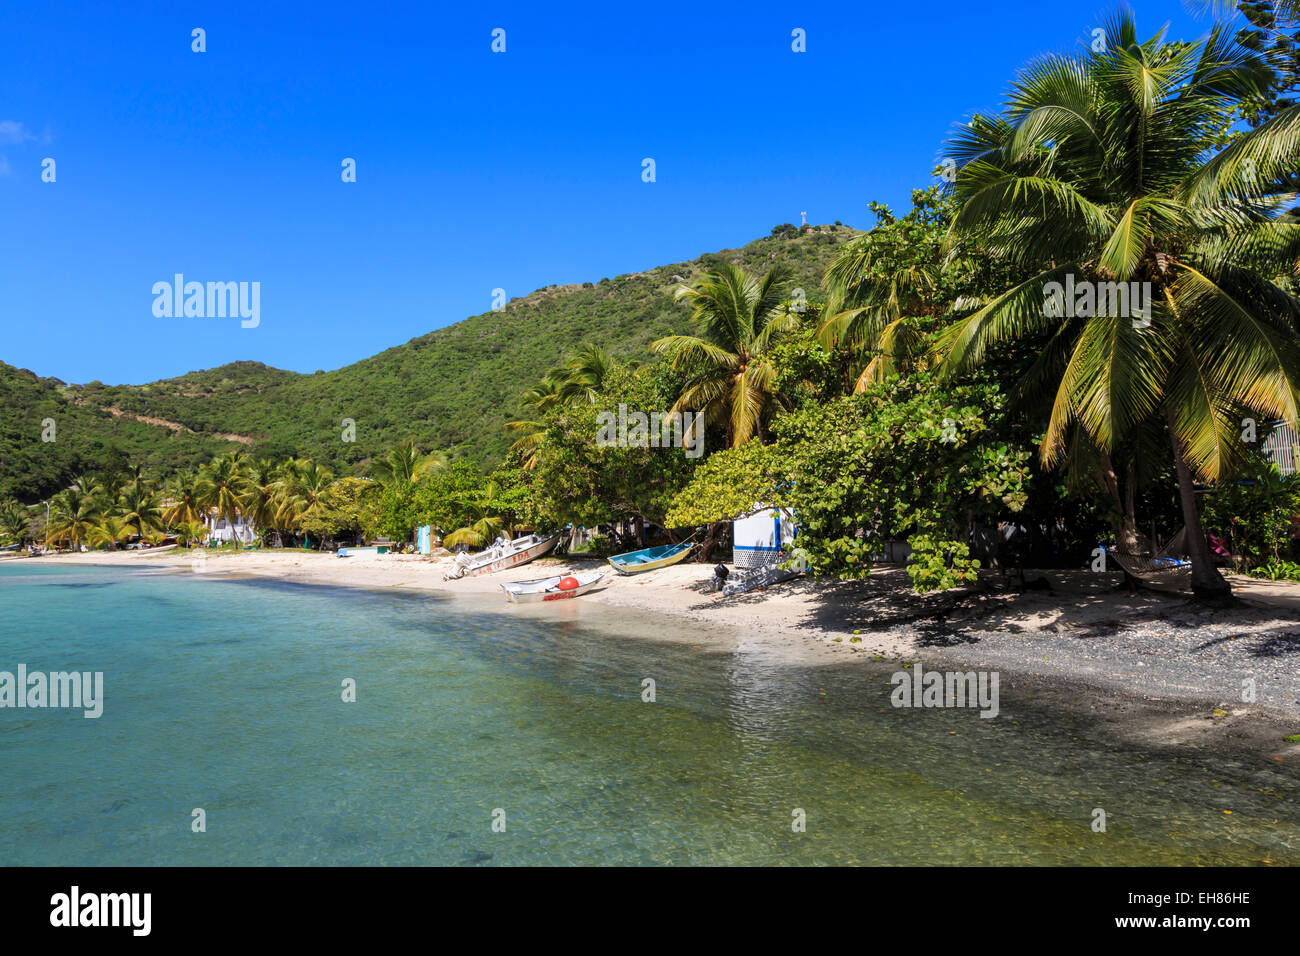 L'eau claire, de la plage, des bateaux et des palmiers, grand port, Jost Van Dyke, Iles Vierges britanniques, Antilles, Caraïbes Banque D'Images